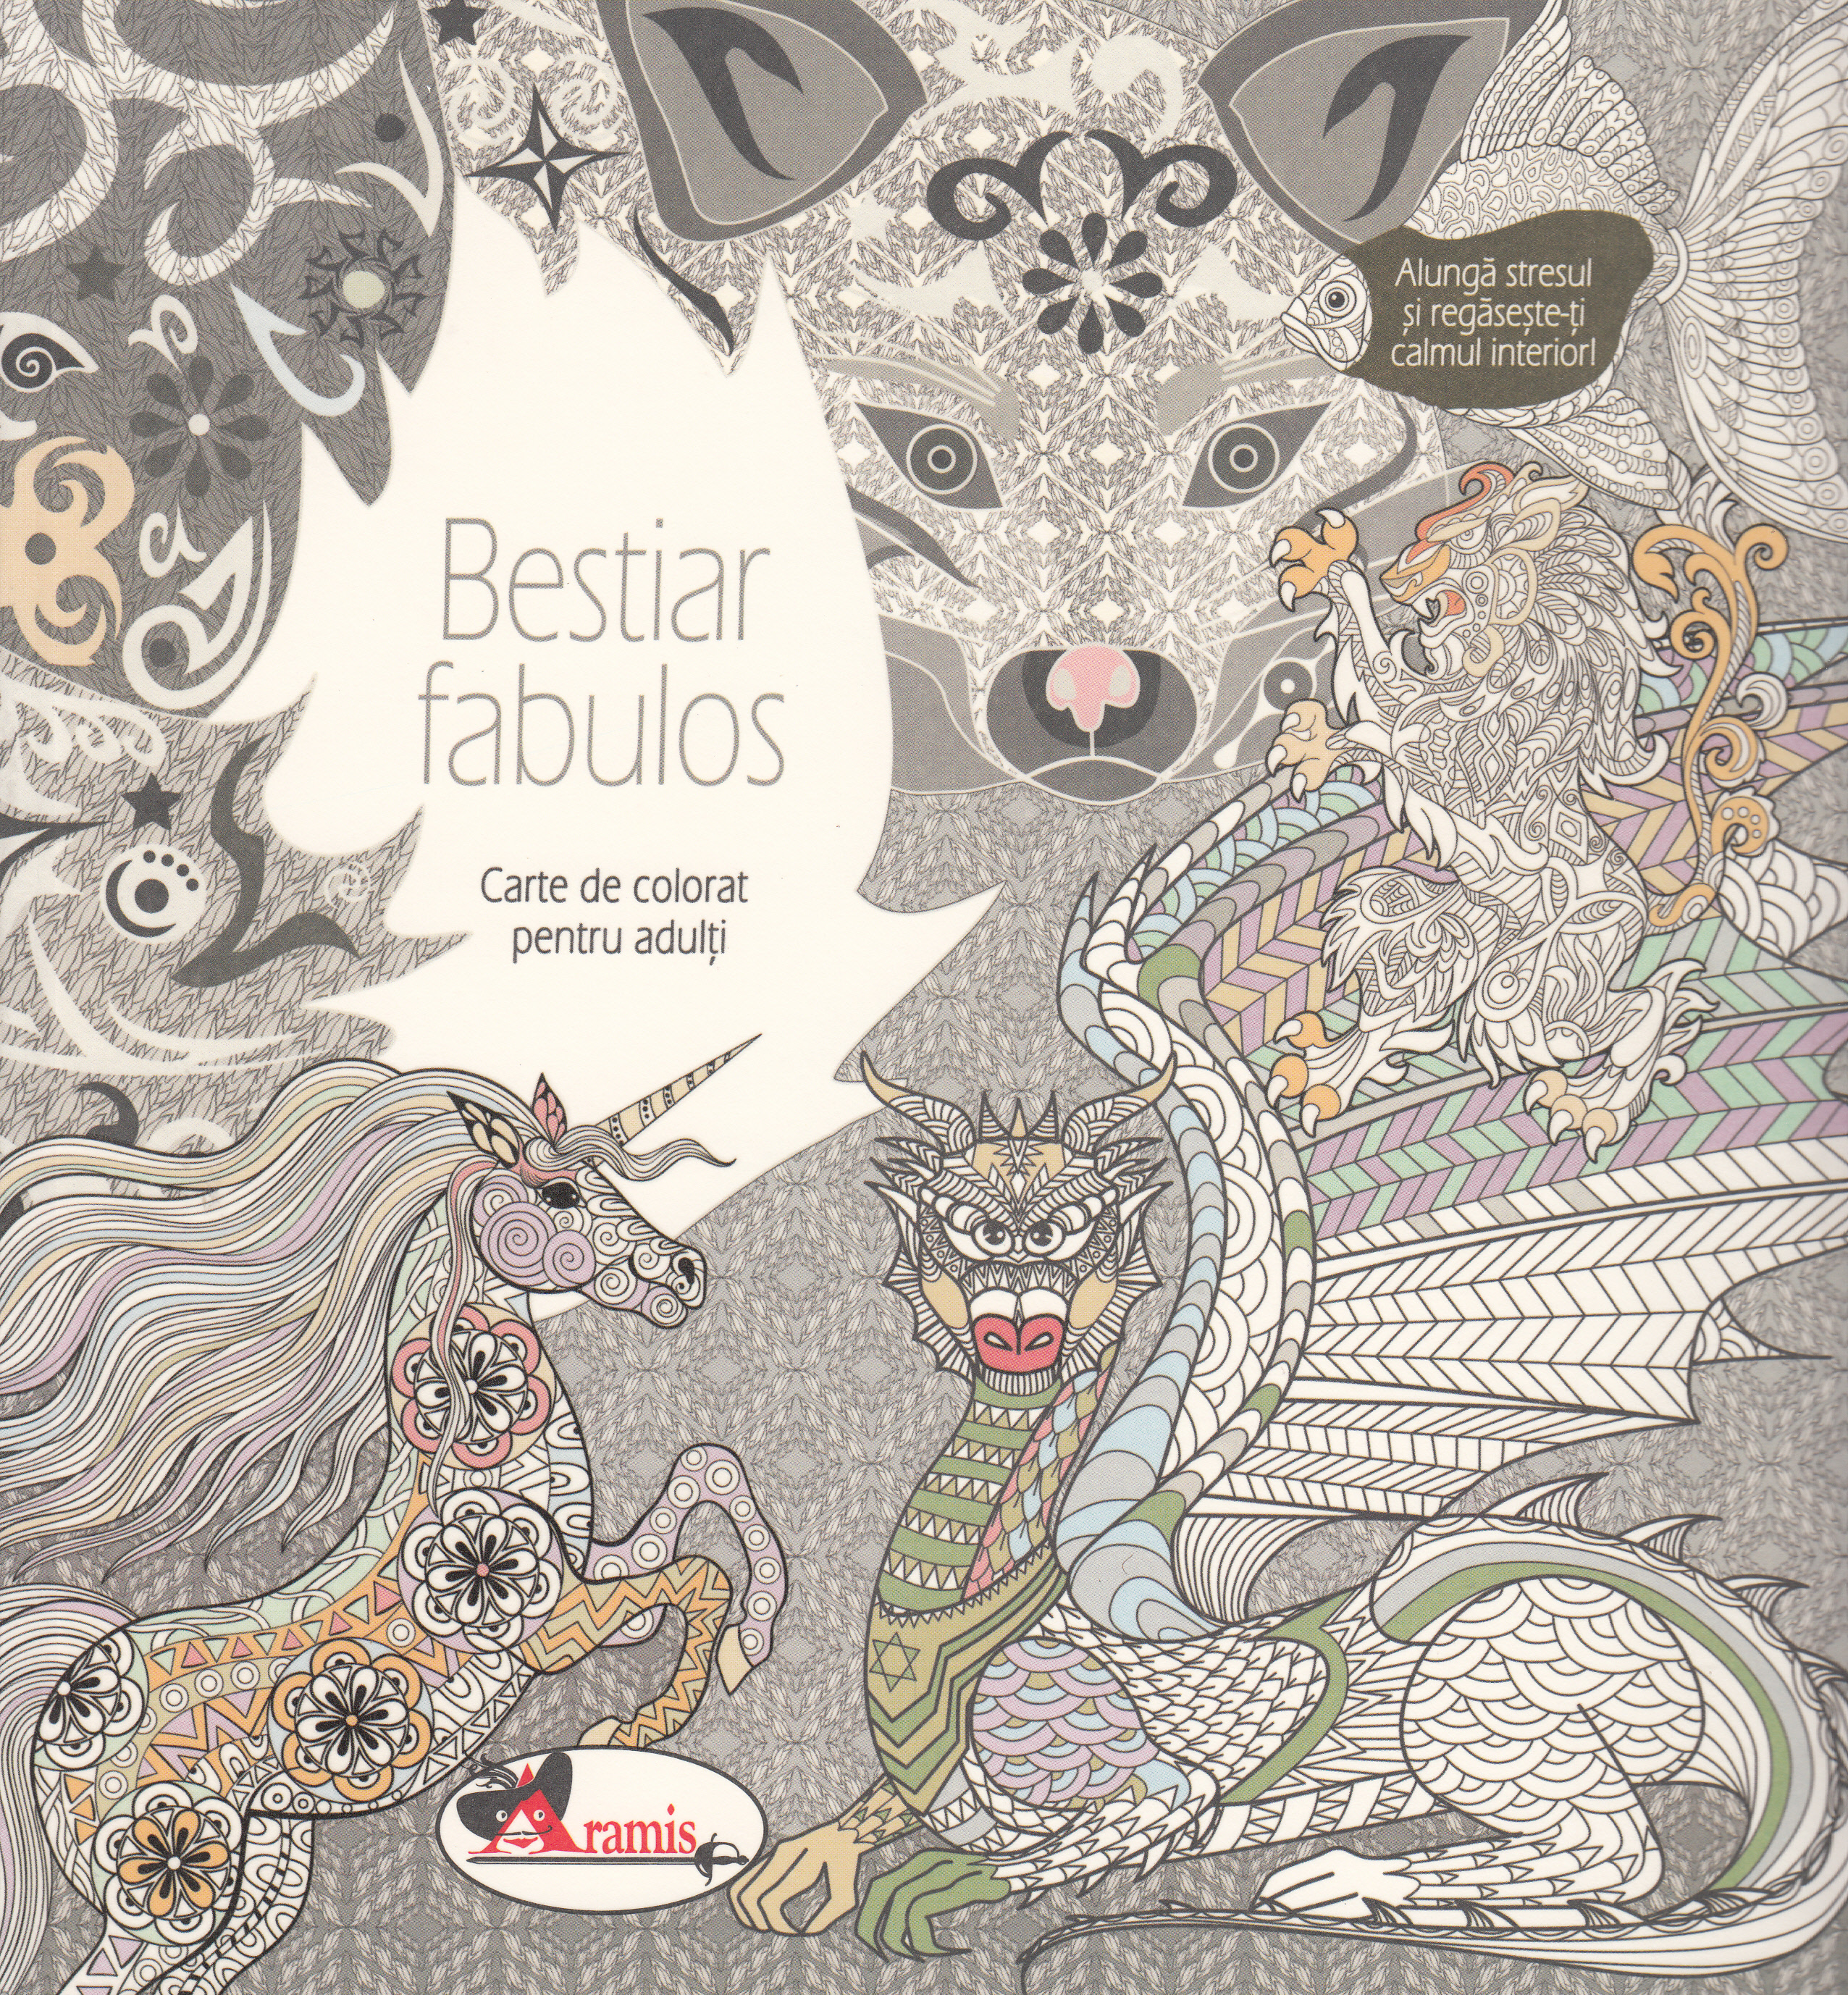 Bestiar fabulos - Carte de colorat pentru adulti